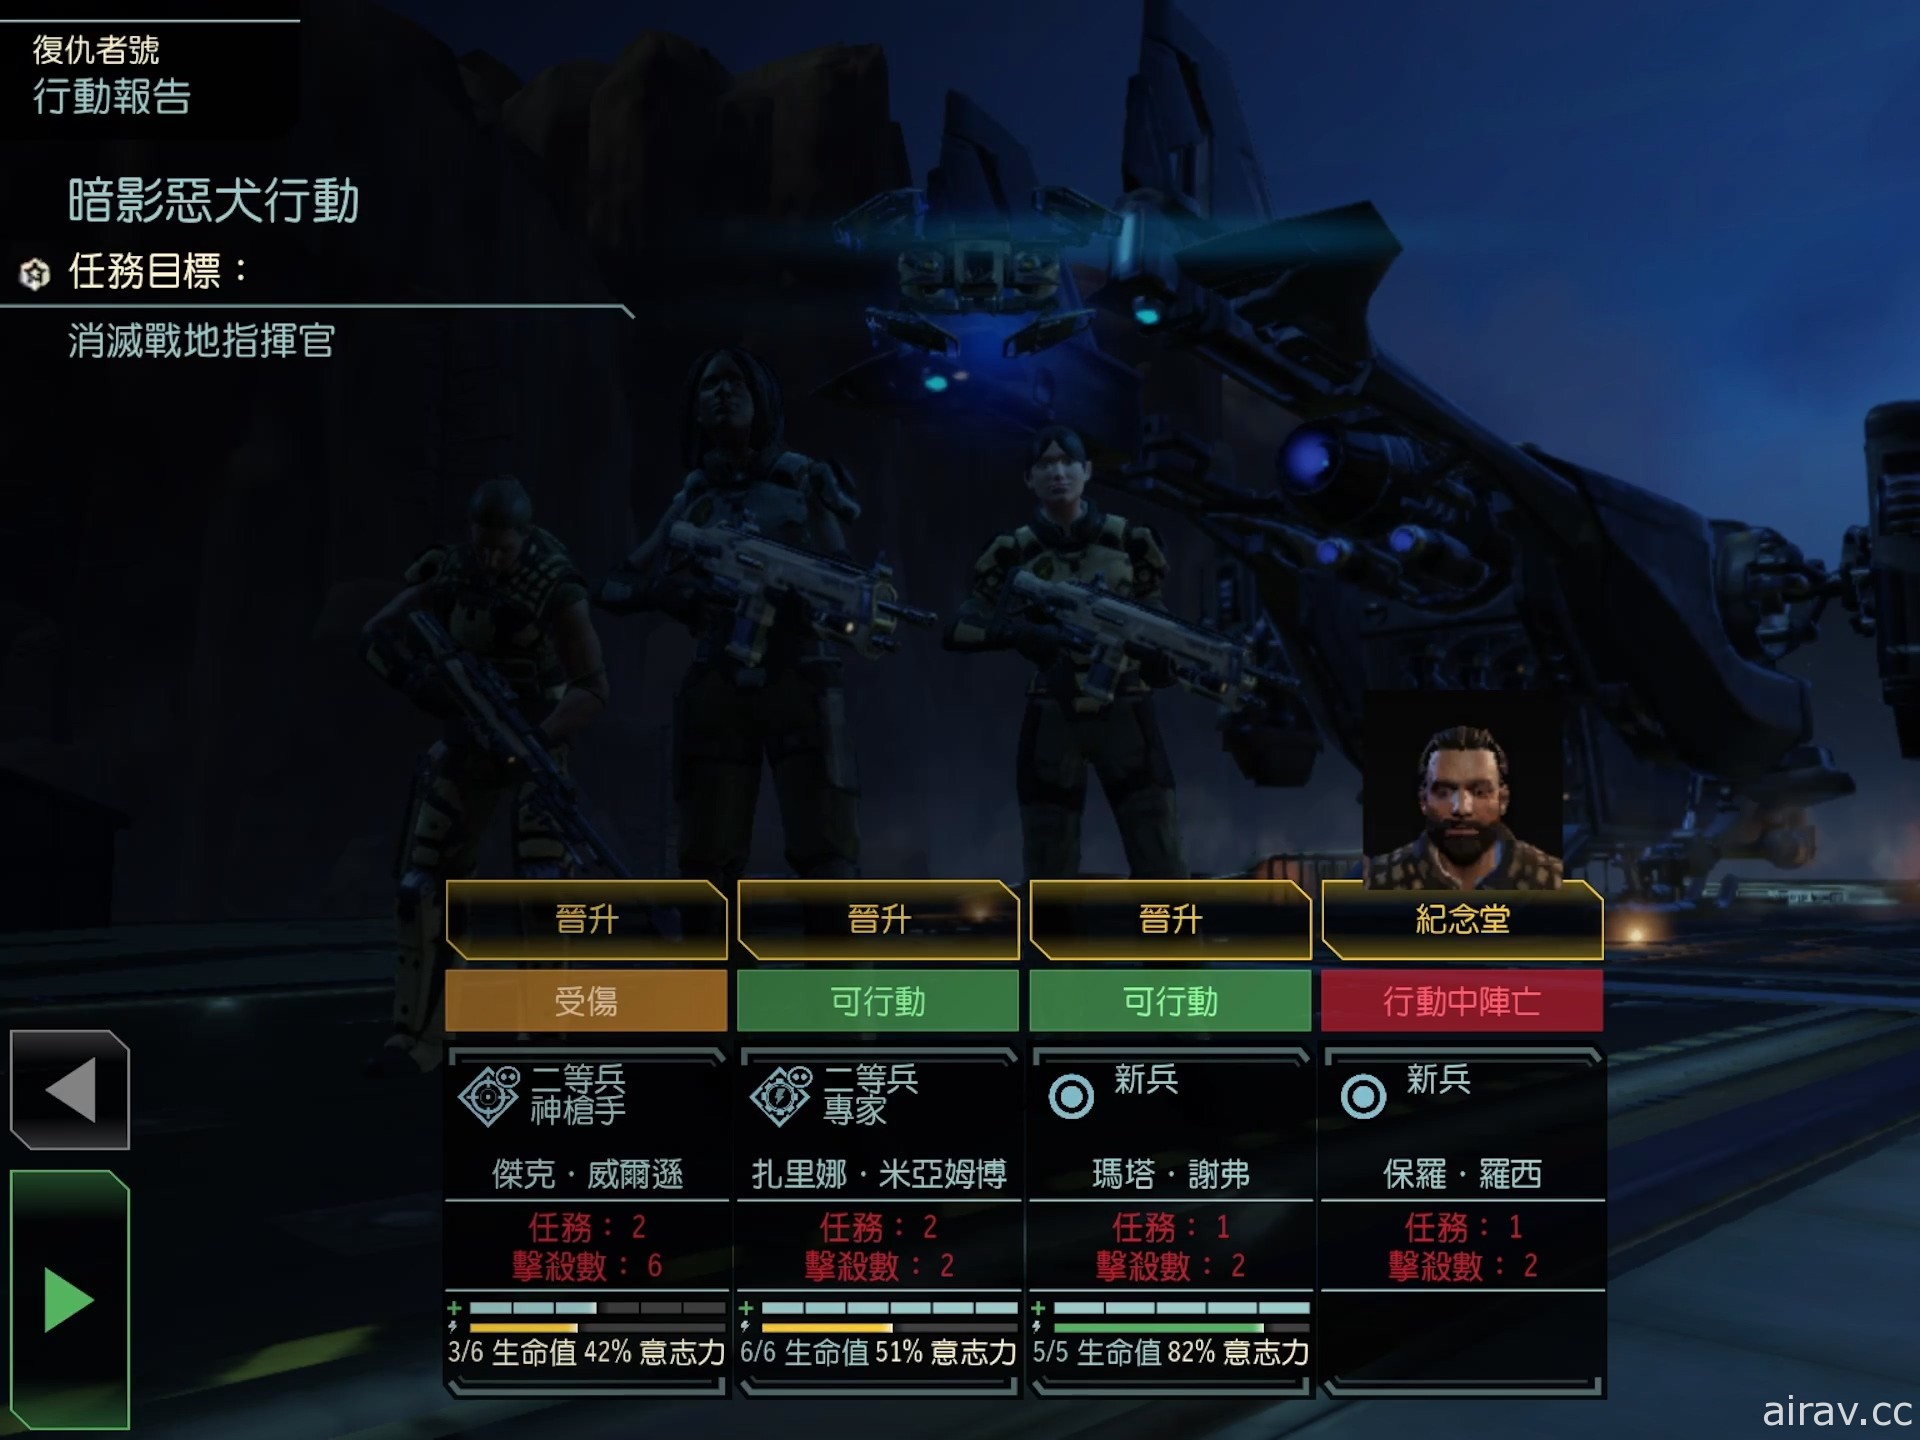 【试玩】《XCOM 2 典藏合辑》随时随地化身指挥官 带领士兵反抗侵略地球的外星部队